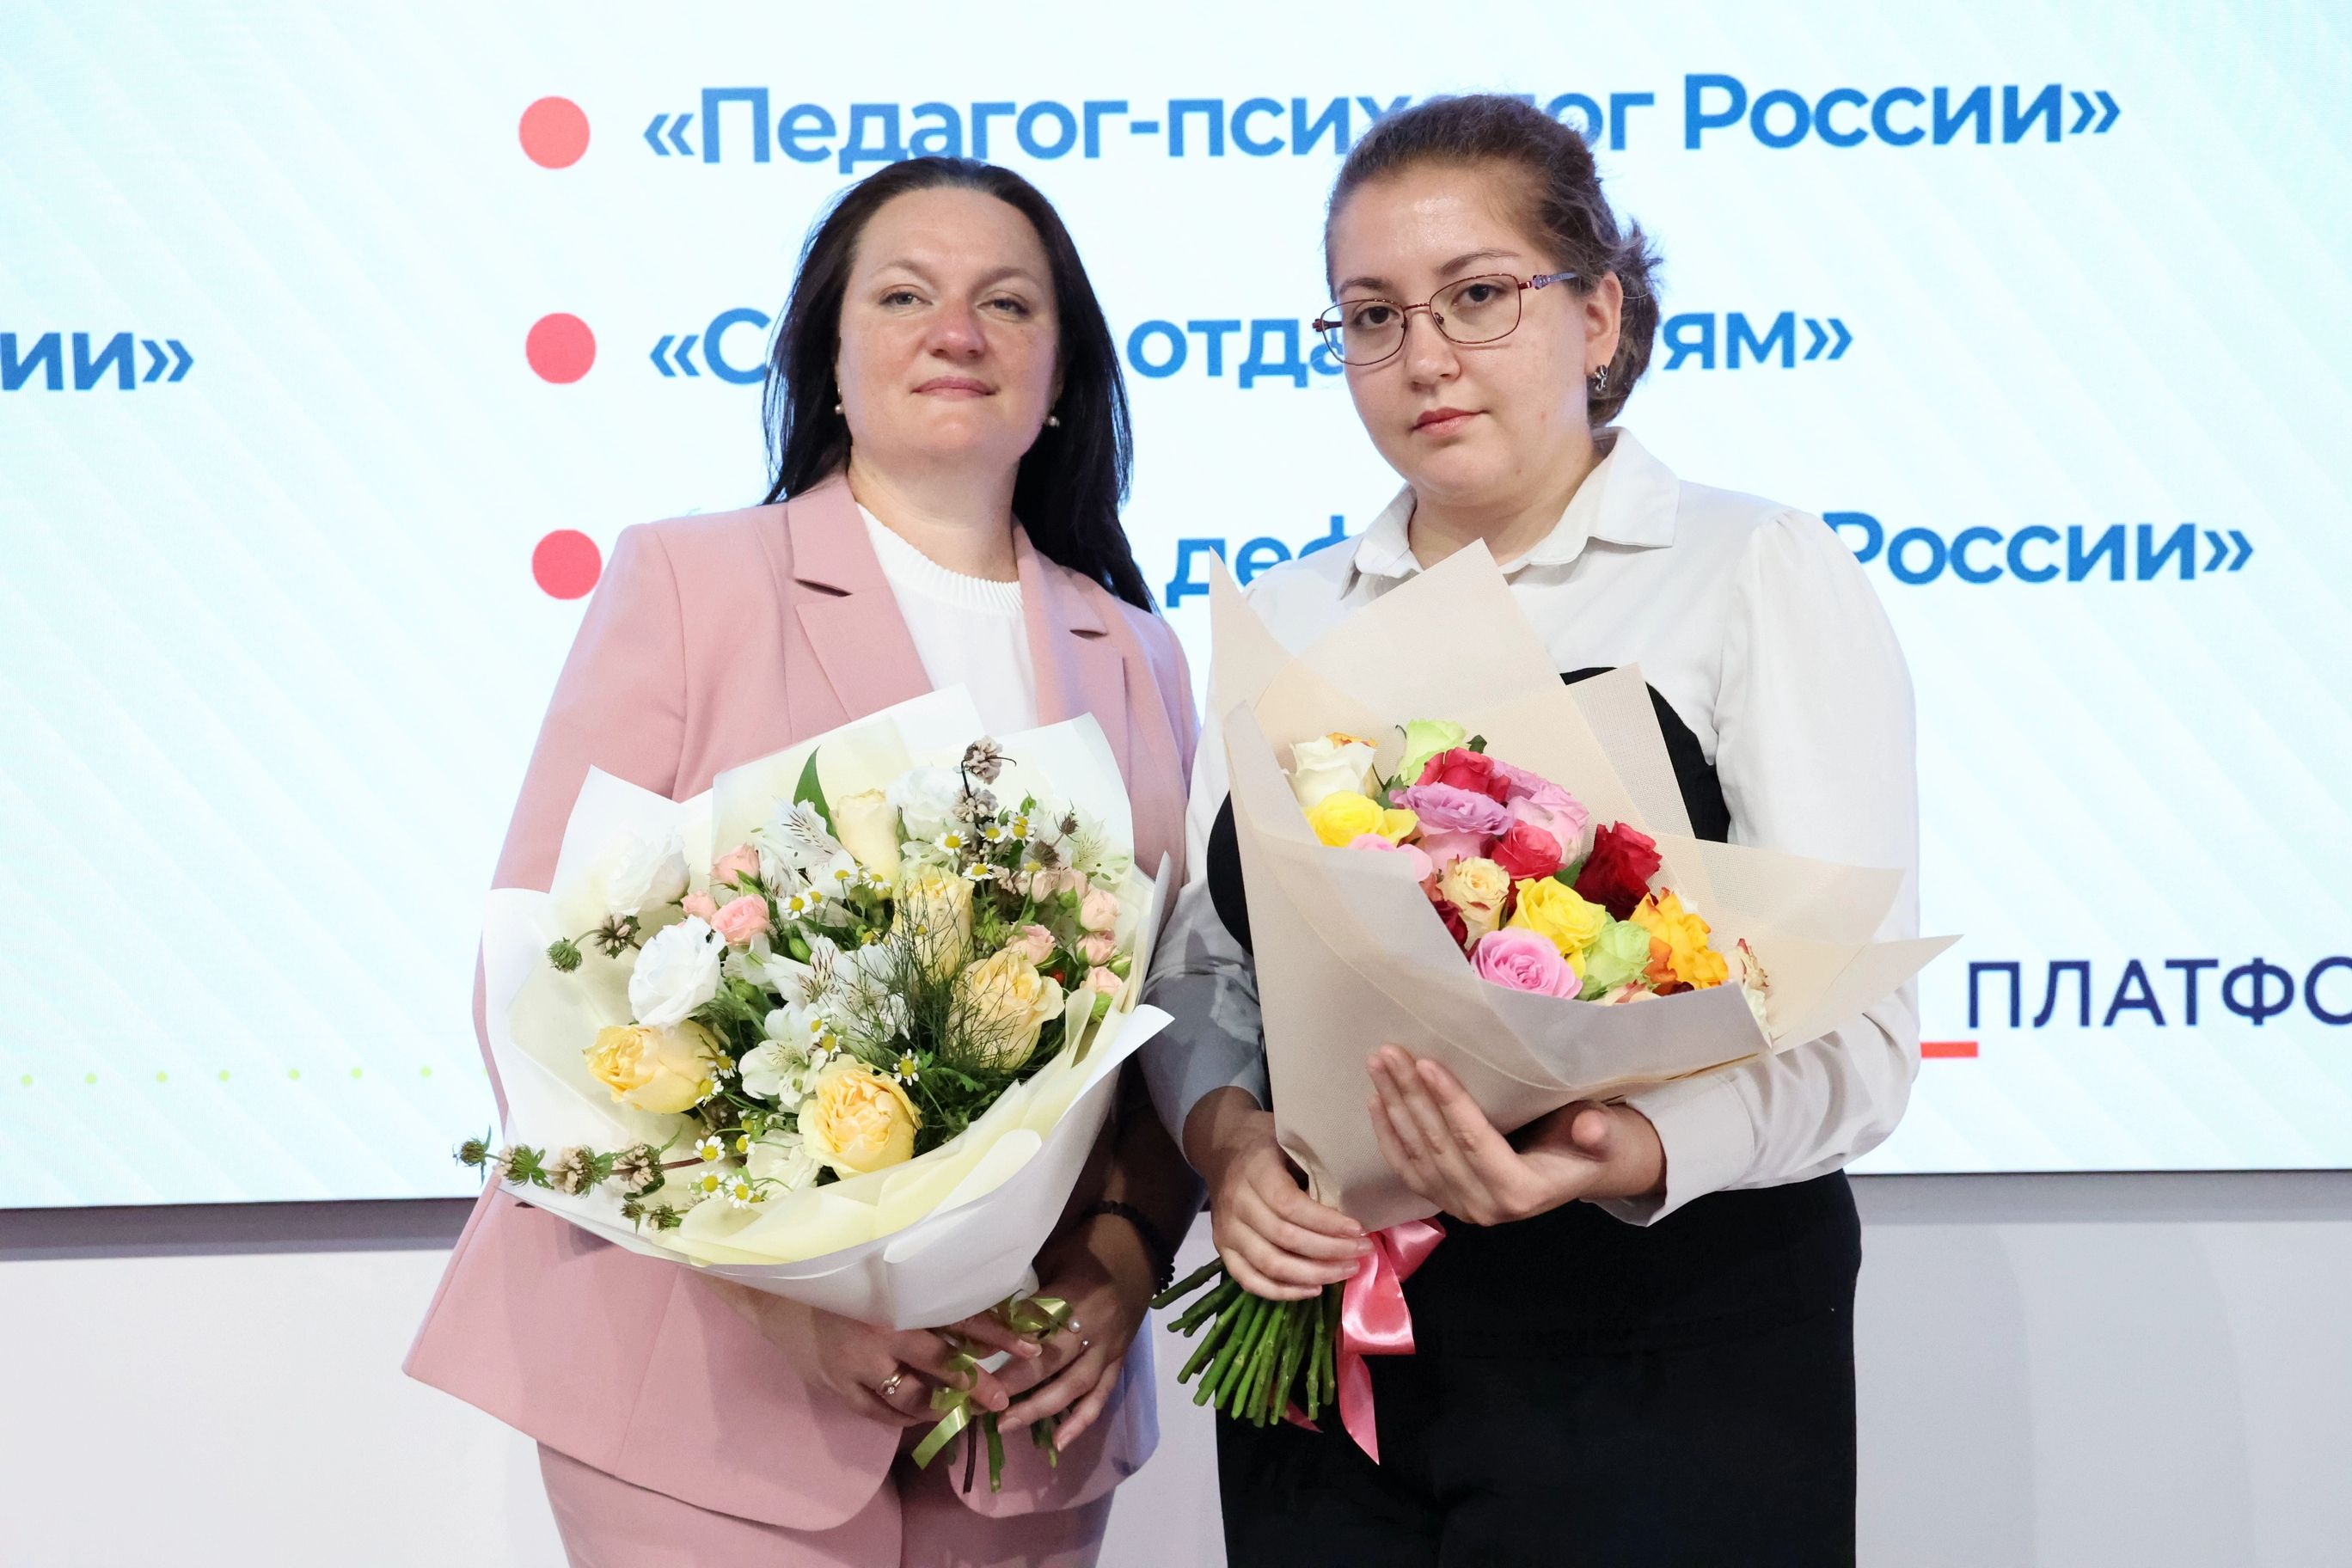 Преподаватель АГПК стала финалистом регионального этапа Всероссийского конкурса «Педагог-психолог России»